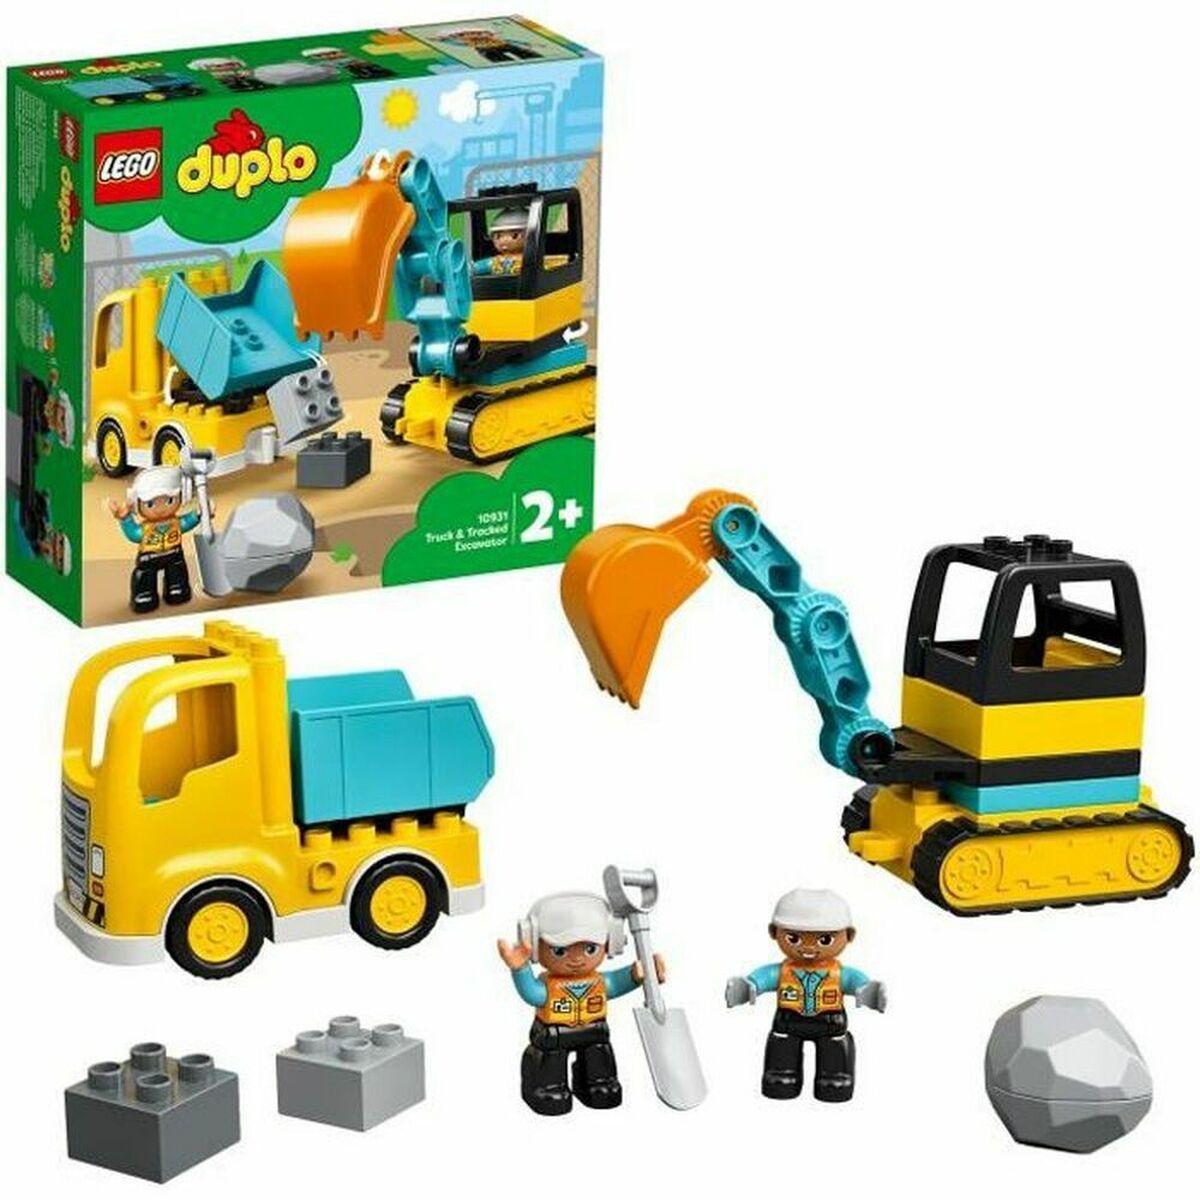 Billede af Playset Lego DUPLO Construction 10931 Truck and Backhoe hos Boligcenter.dk